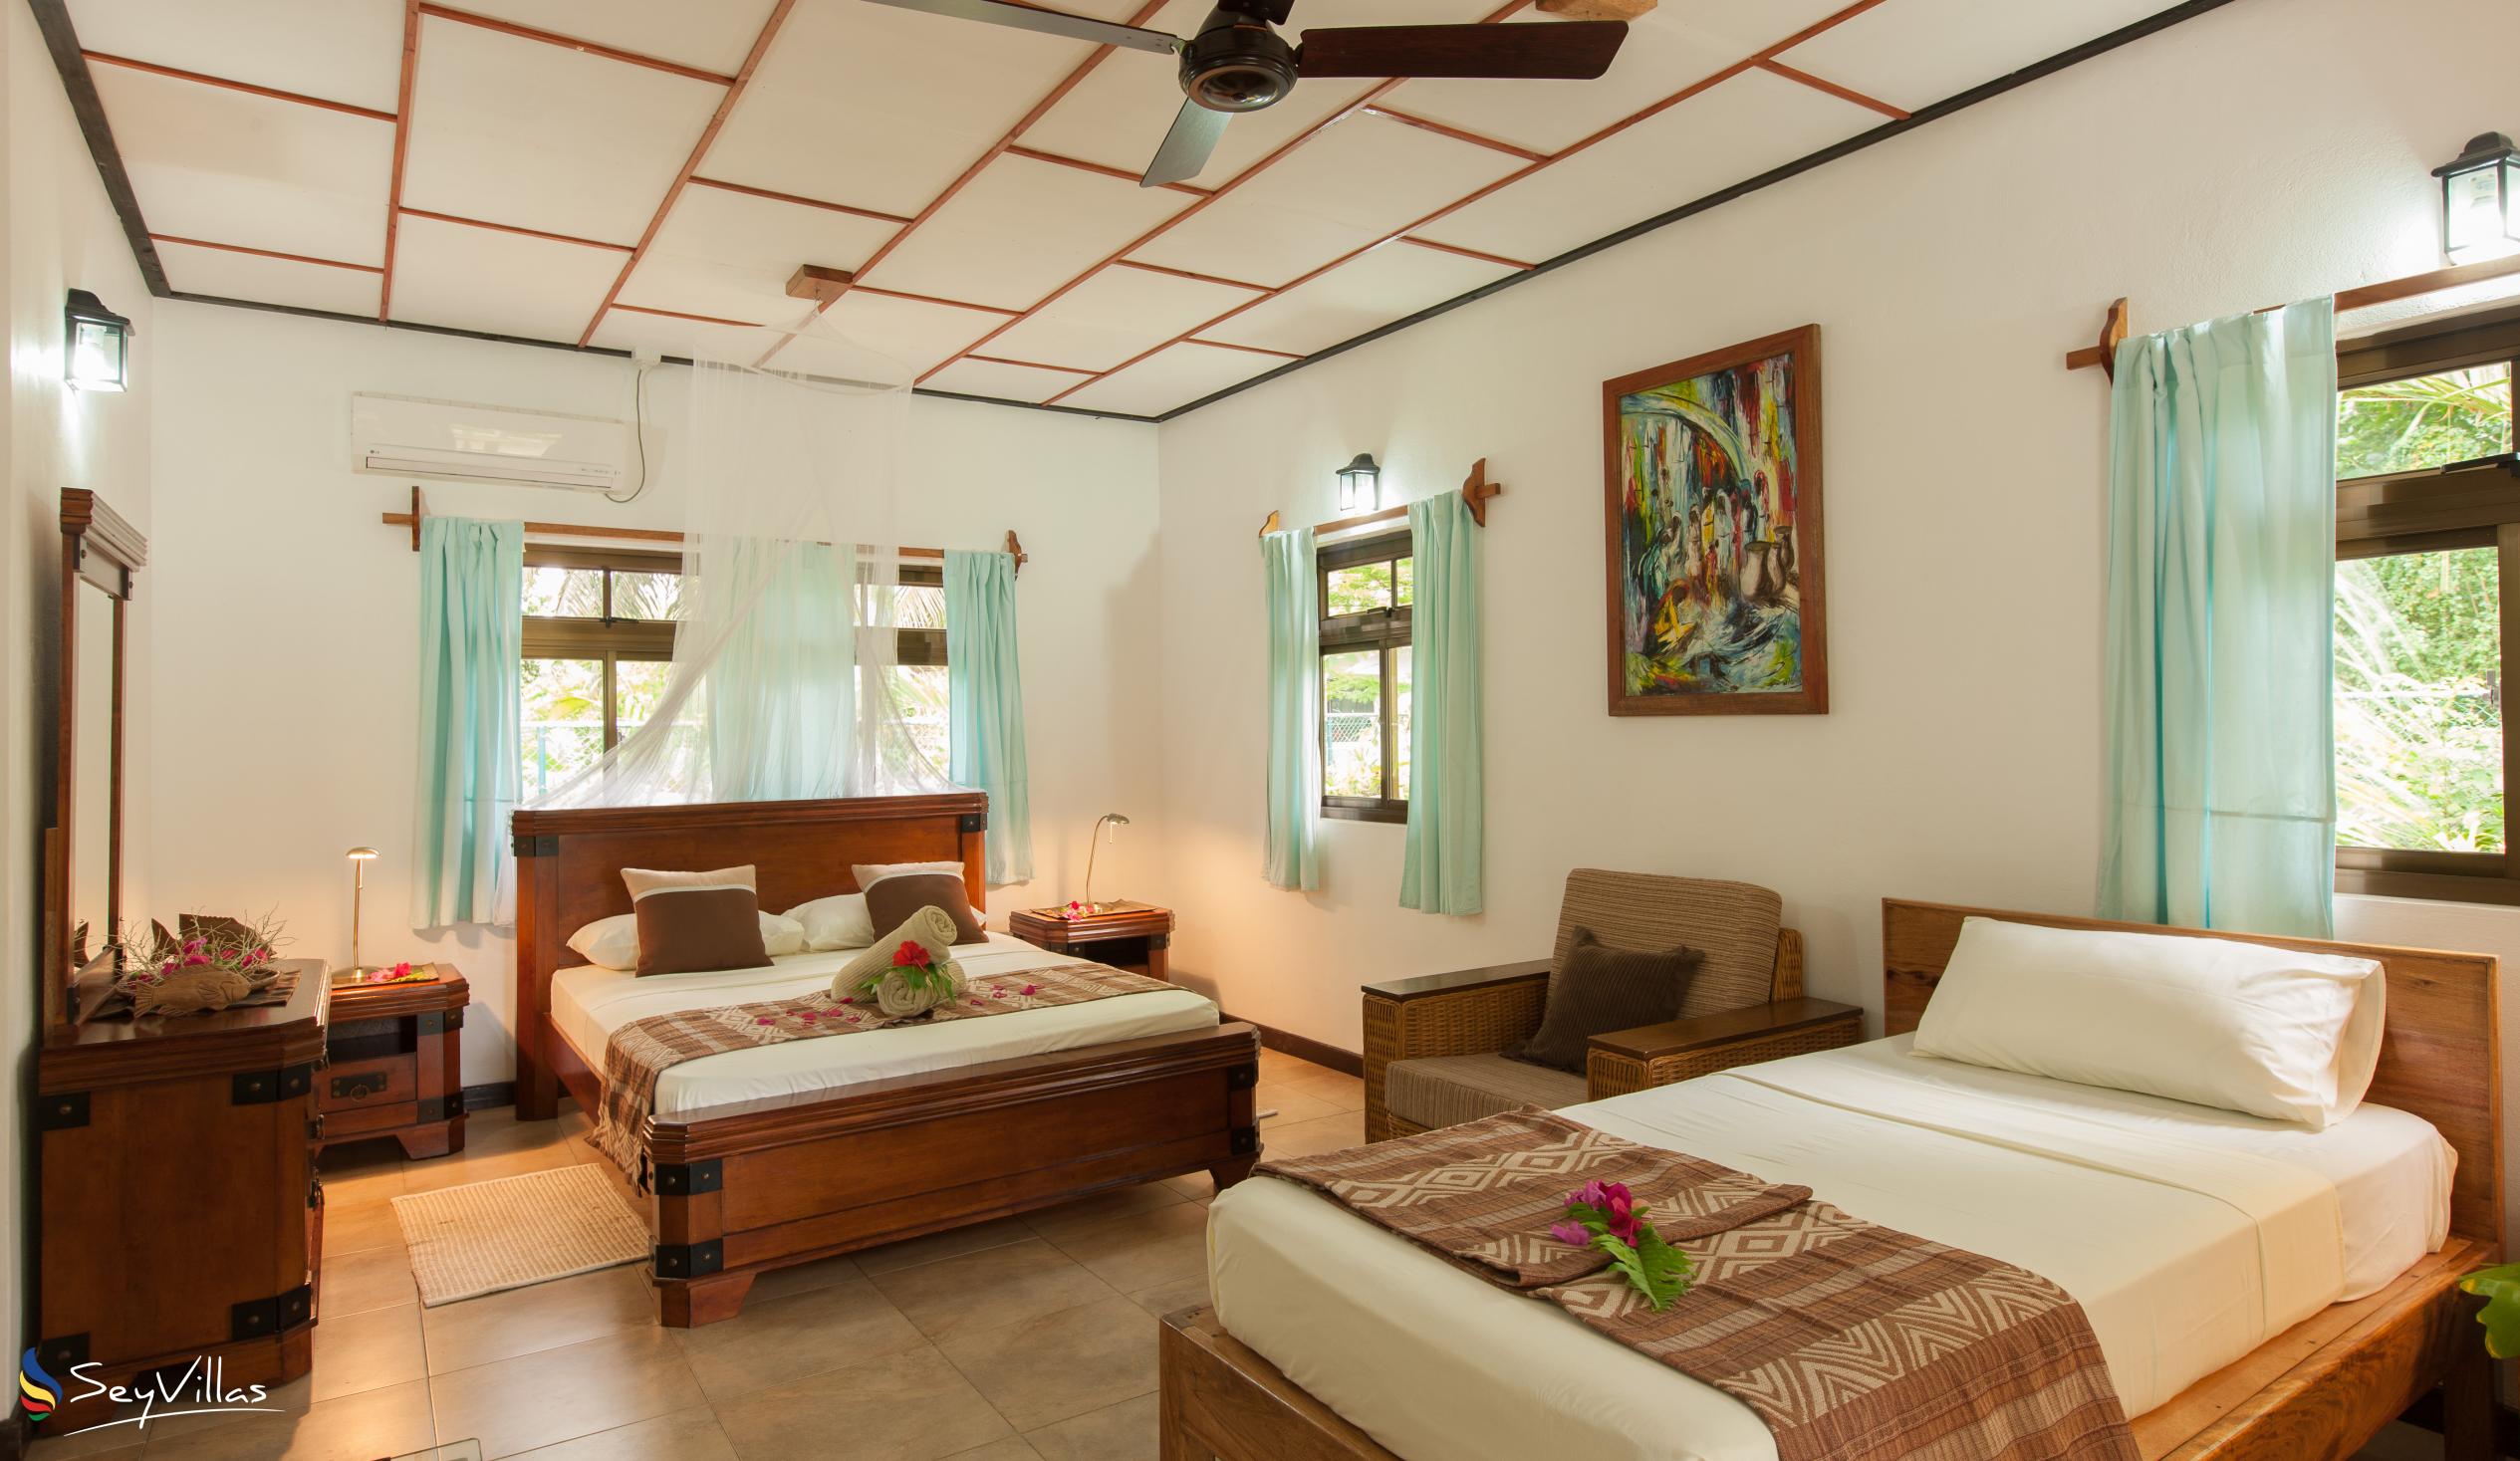 Photo 95: Domaine Les Rochers - 2-Bedroom Bungalow Palmier - La Digue (Seychelles)